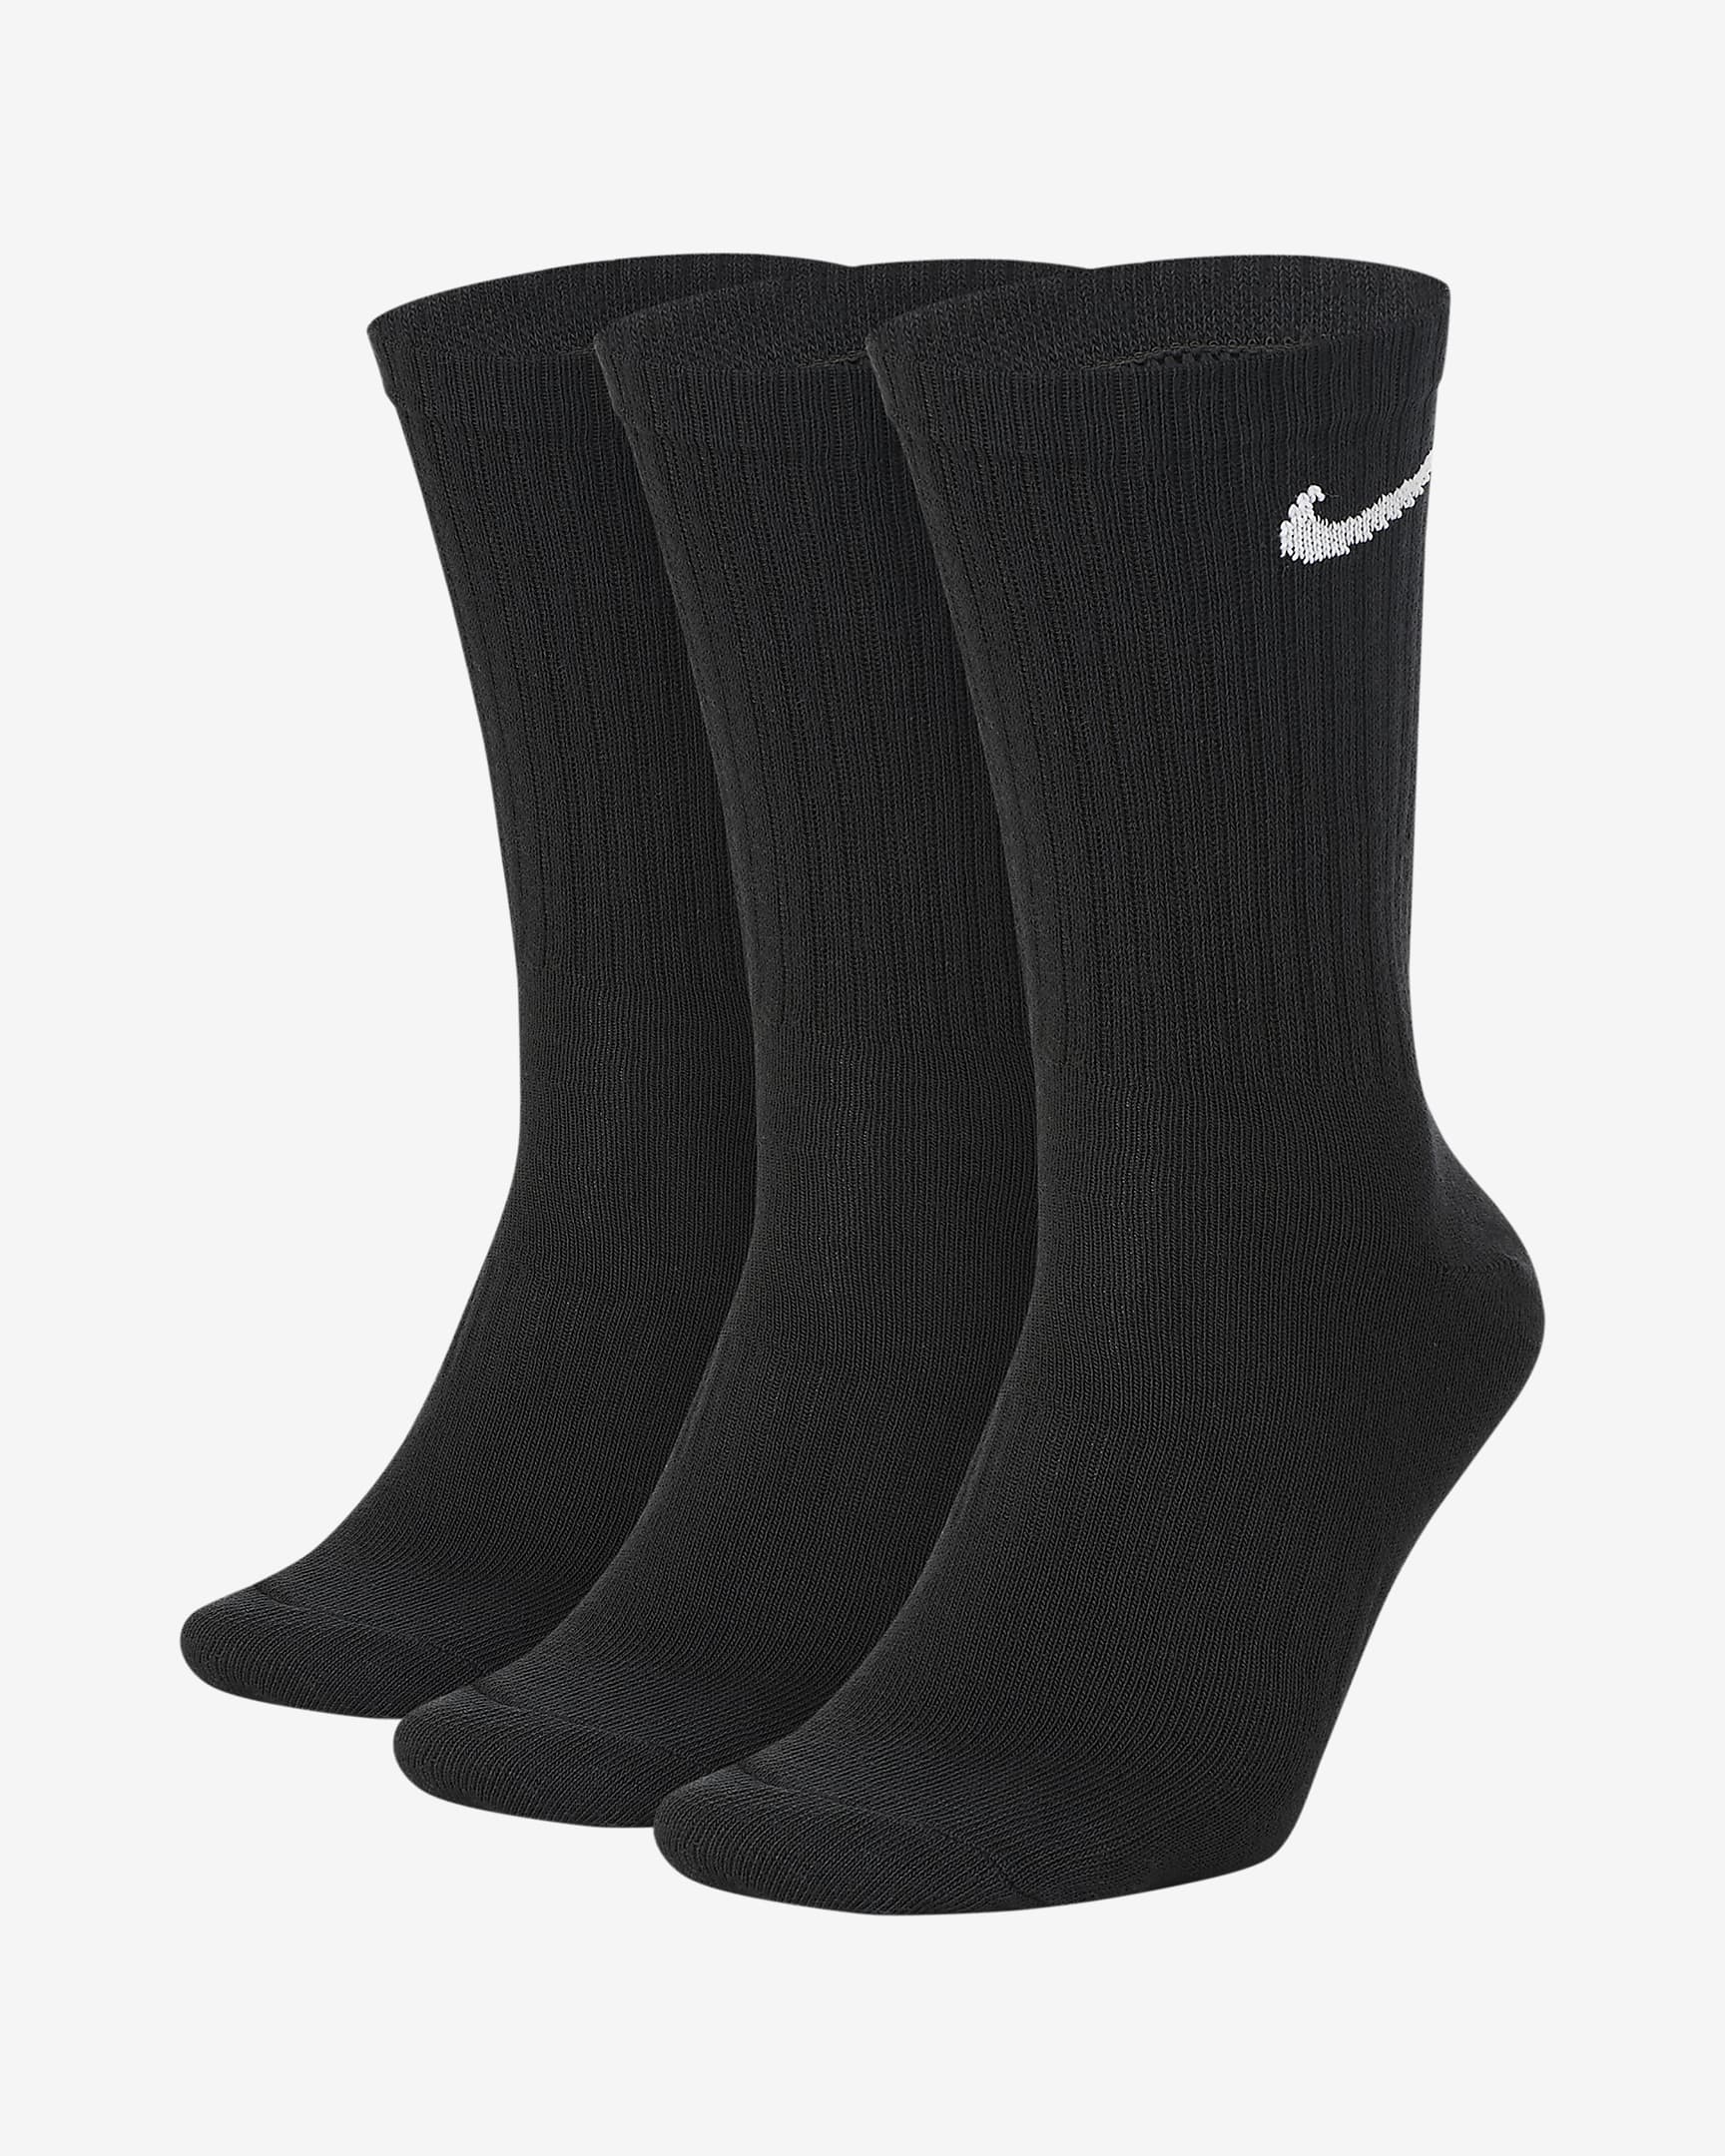 'Nike Everyday Lightweight' Training socks - 3 PACK / MEN